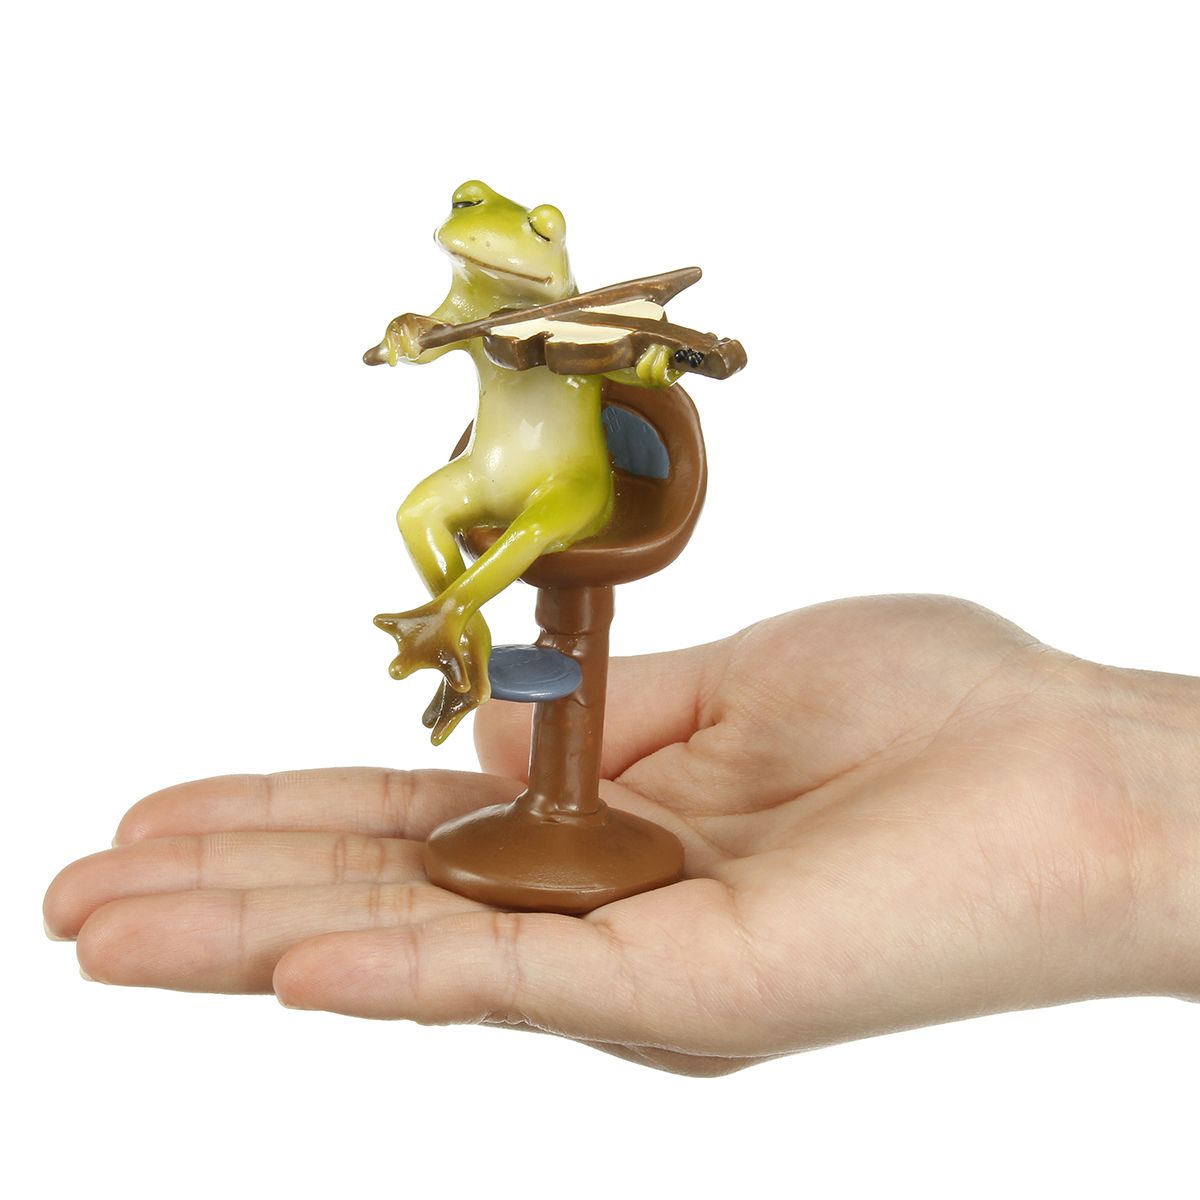 Cute-Frog-Statue-Figurine-Home-Office-Desk-Ornament-Garden-Bonsai-Decor-Gift-1704537